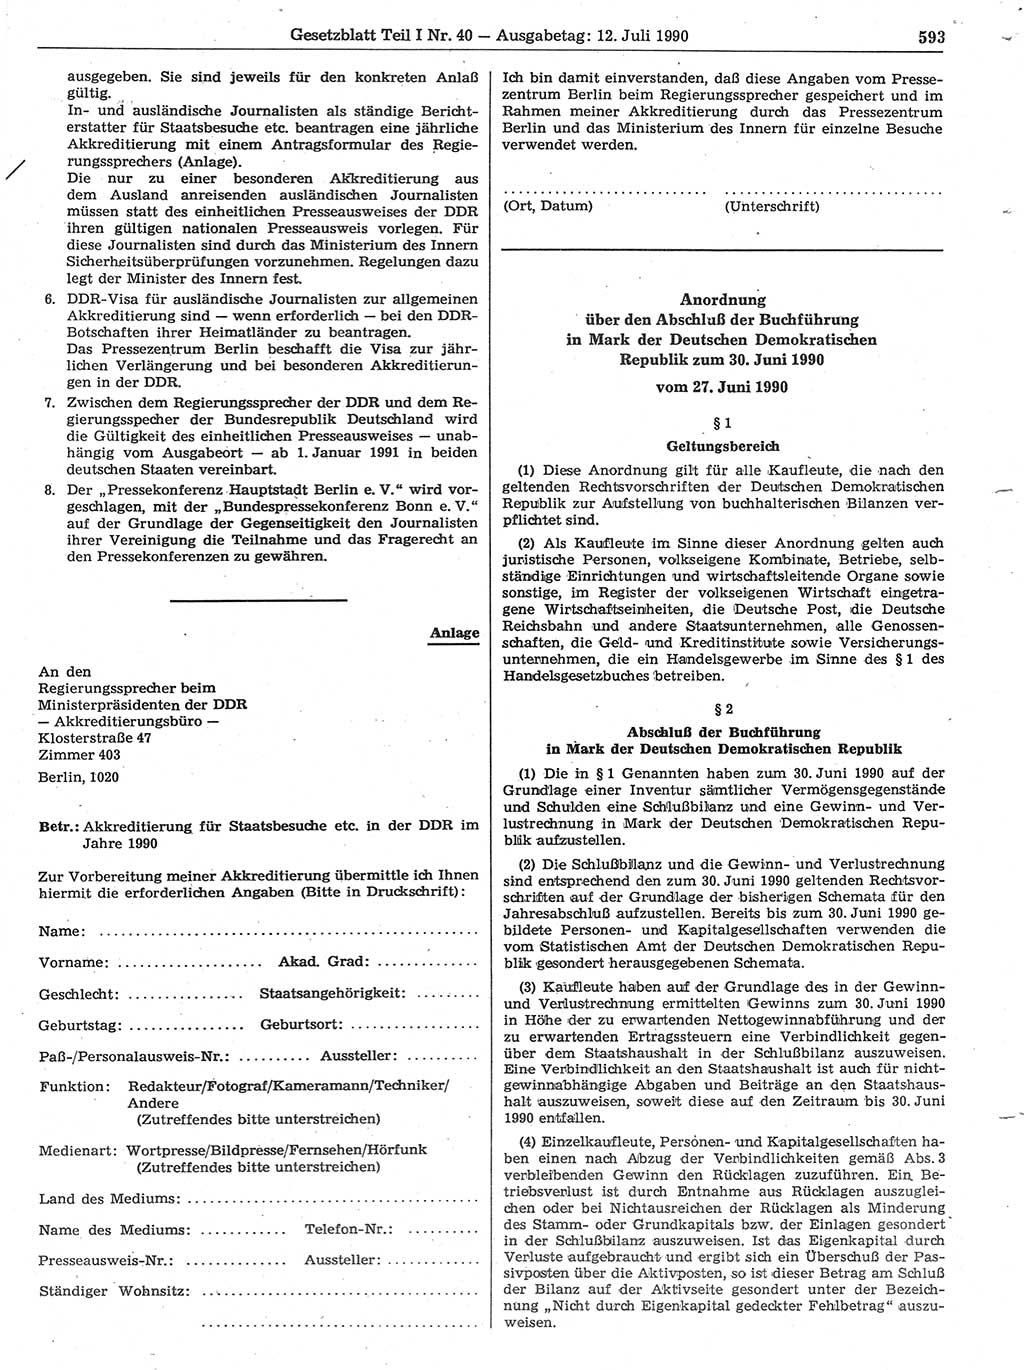 Gesetzblatt (GBl.) der Deutschen Demokratischen Republik (DDR) Teil Ⅰ 1990, Seite 593 (GBl. DDR Ⅰ 1990, S. 593)